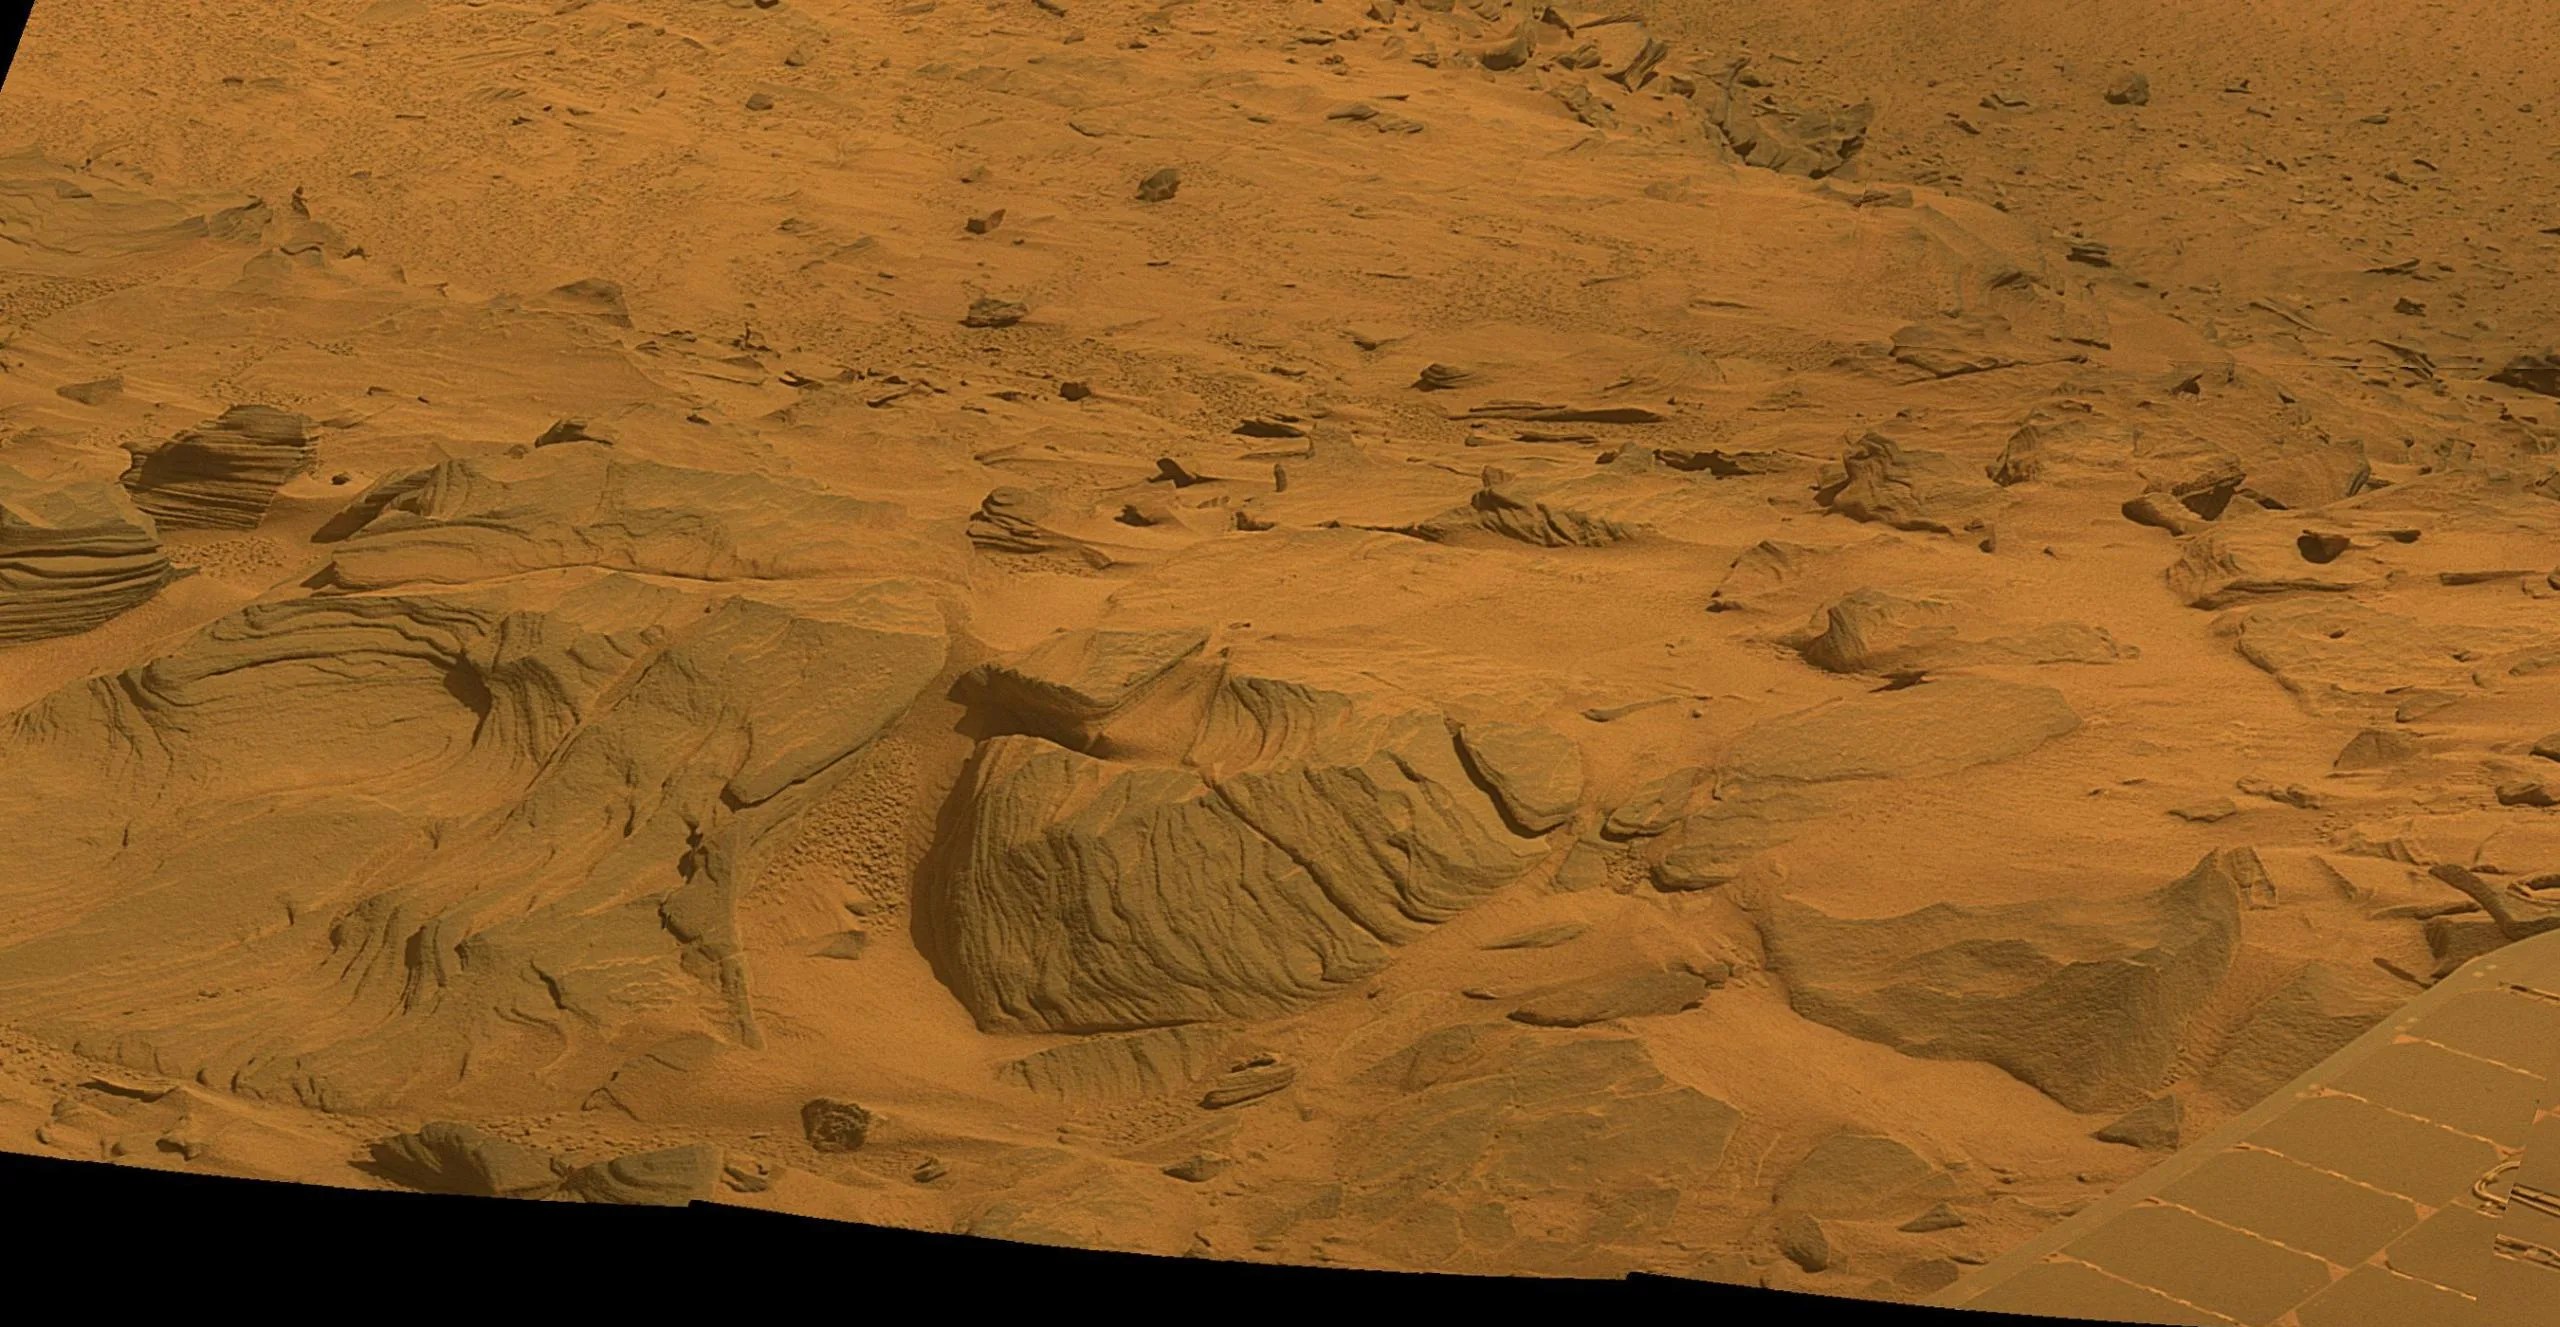 Una vista de un área en el Valle Oeste de Marte tomada por el rover marciano Spirit.